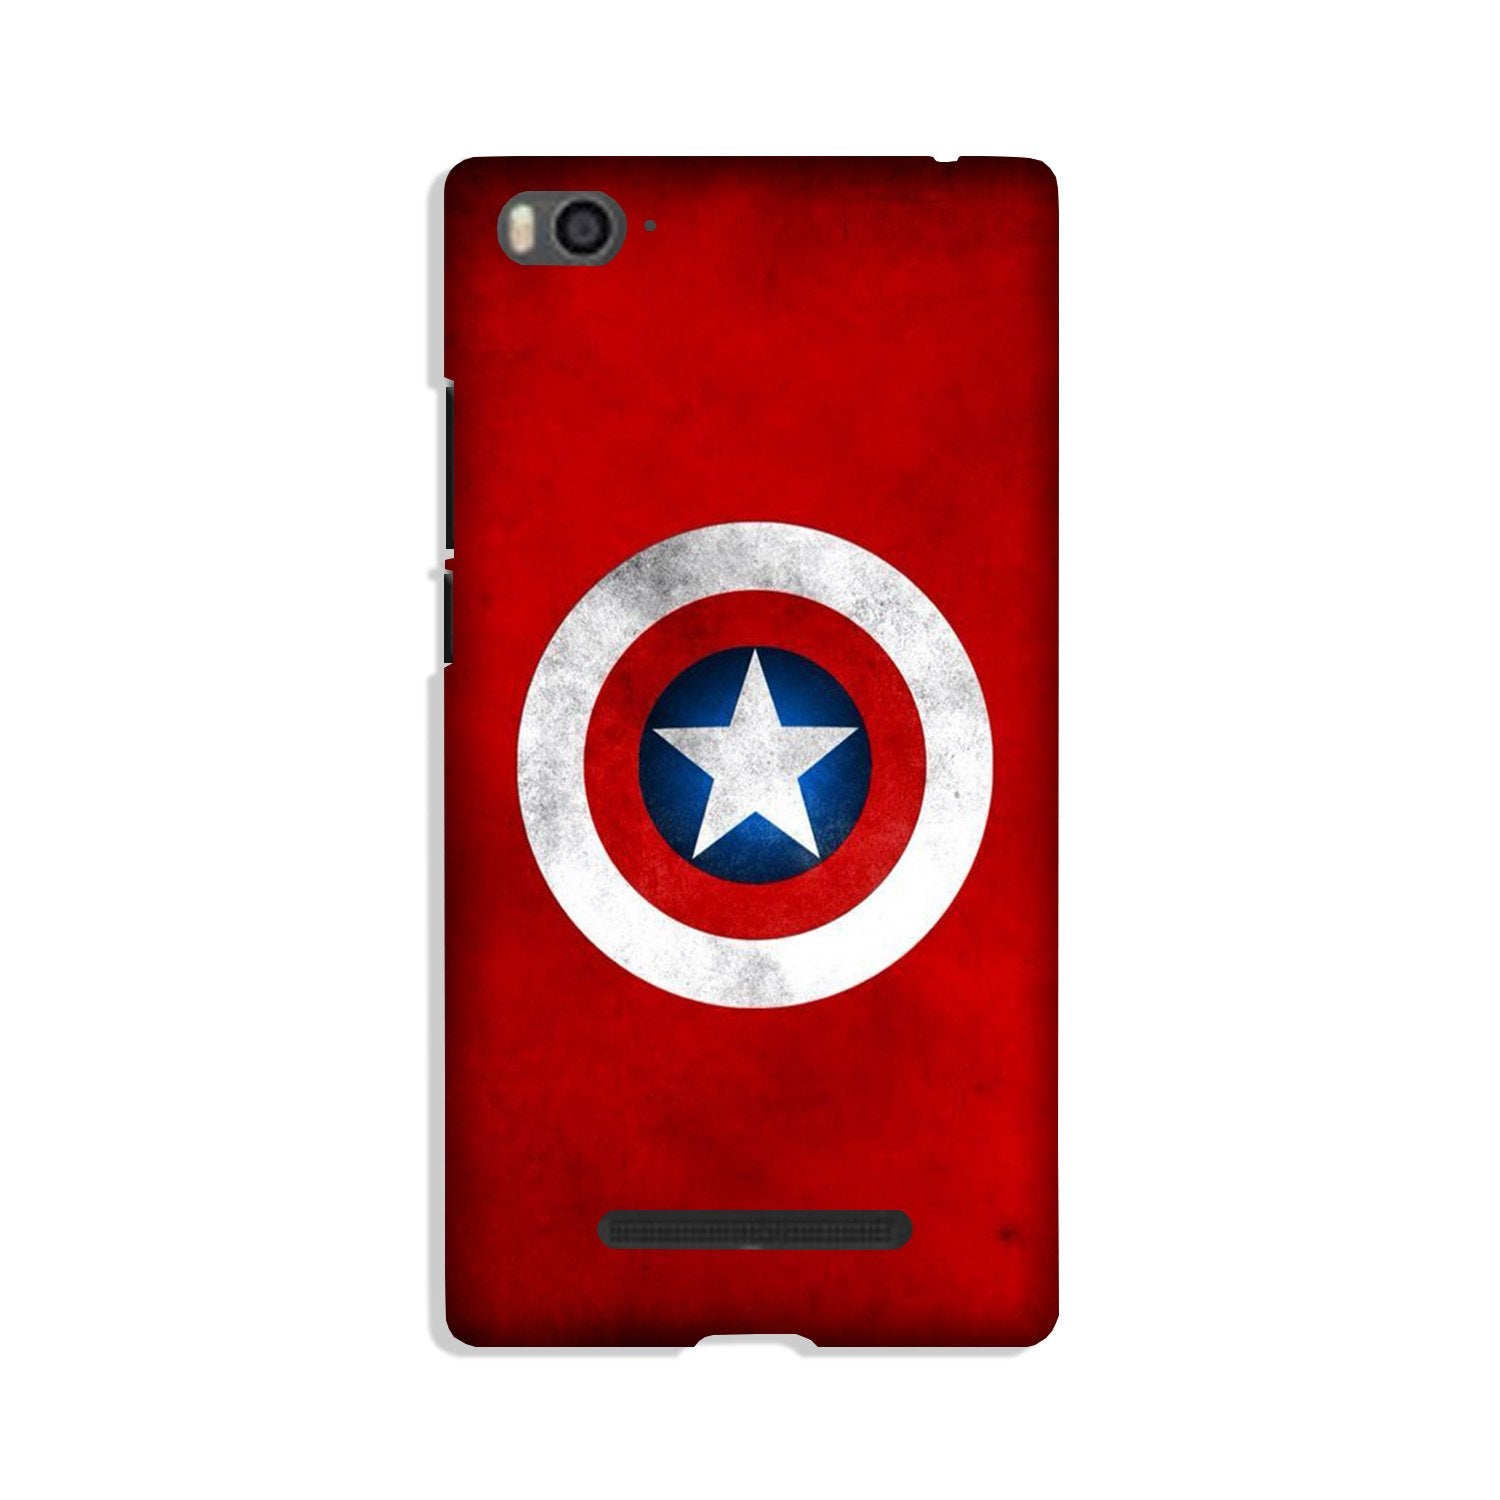 Captain America Case for Xiaomi Mi 4i (Design No. 249)